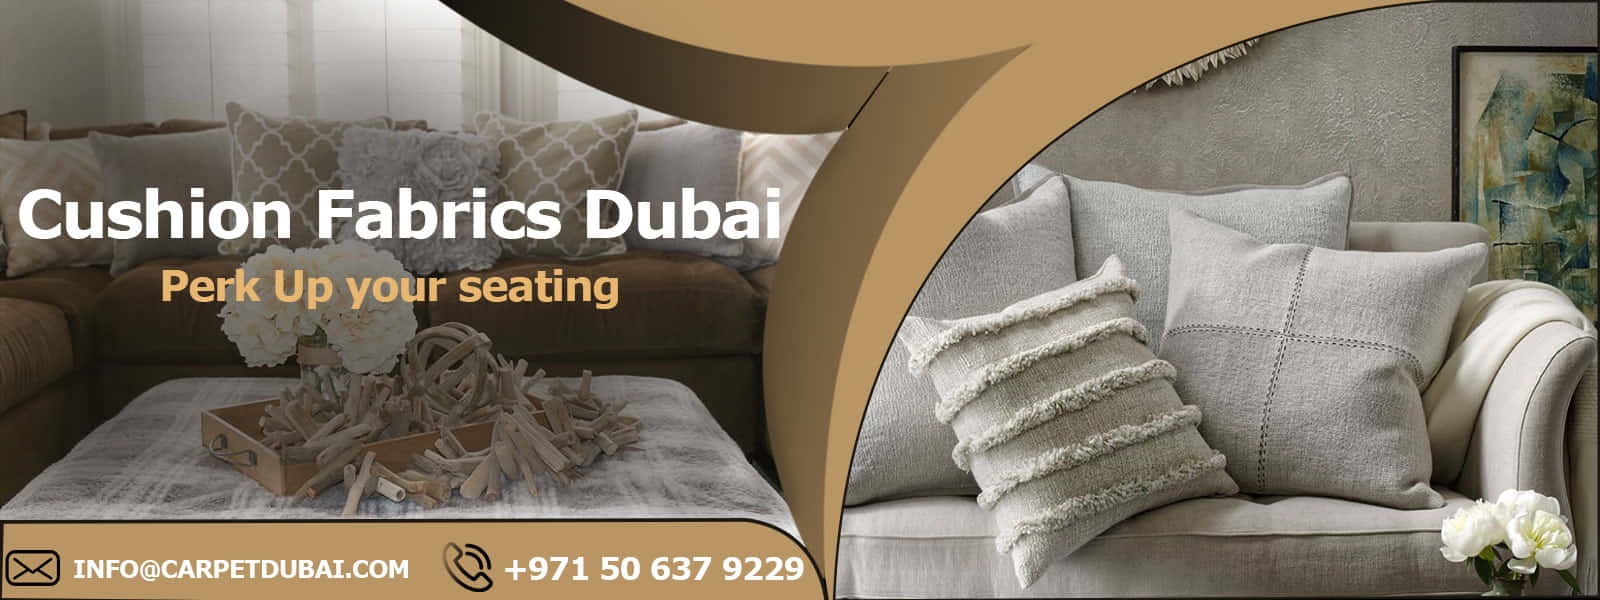 Cushion-Fabric-Dubai Banner